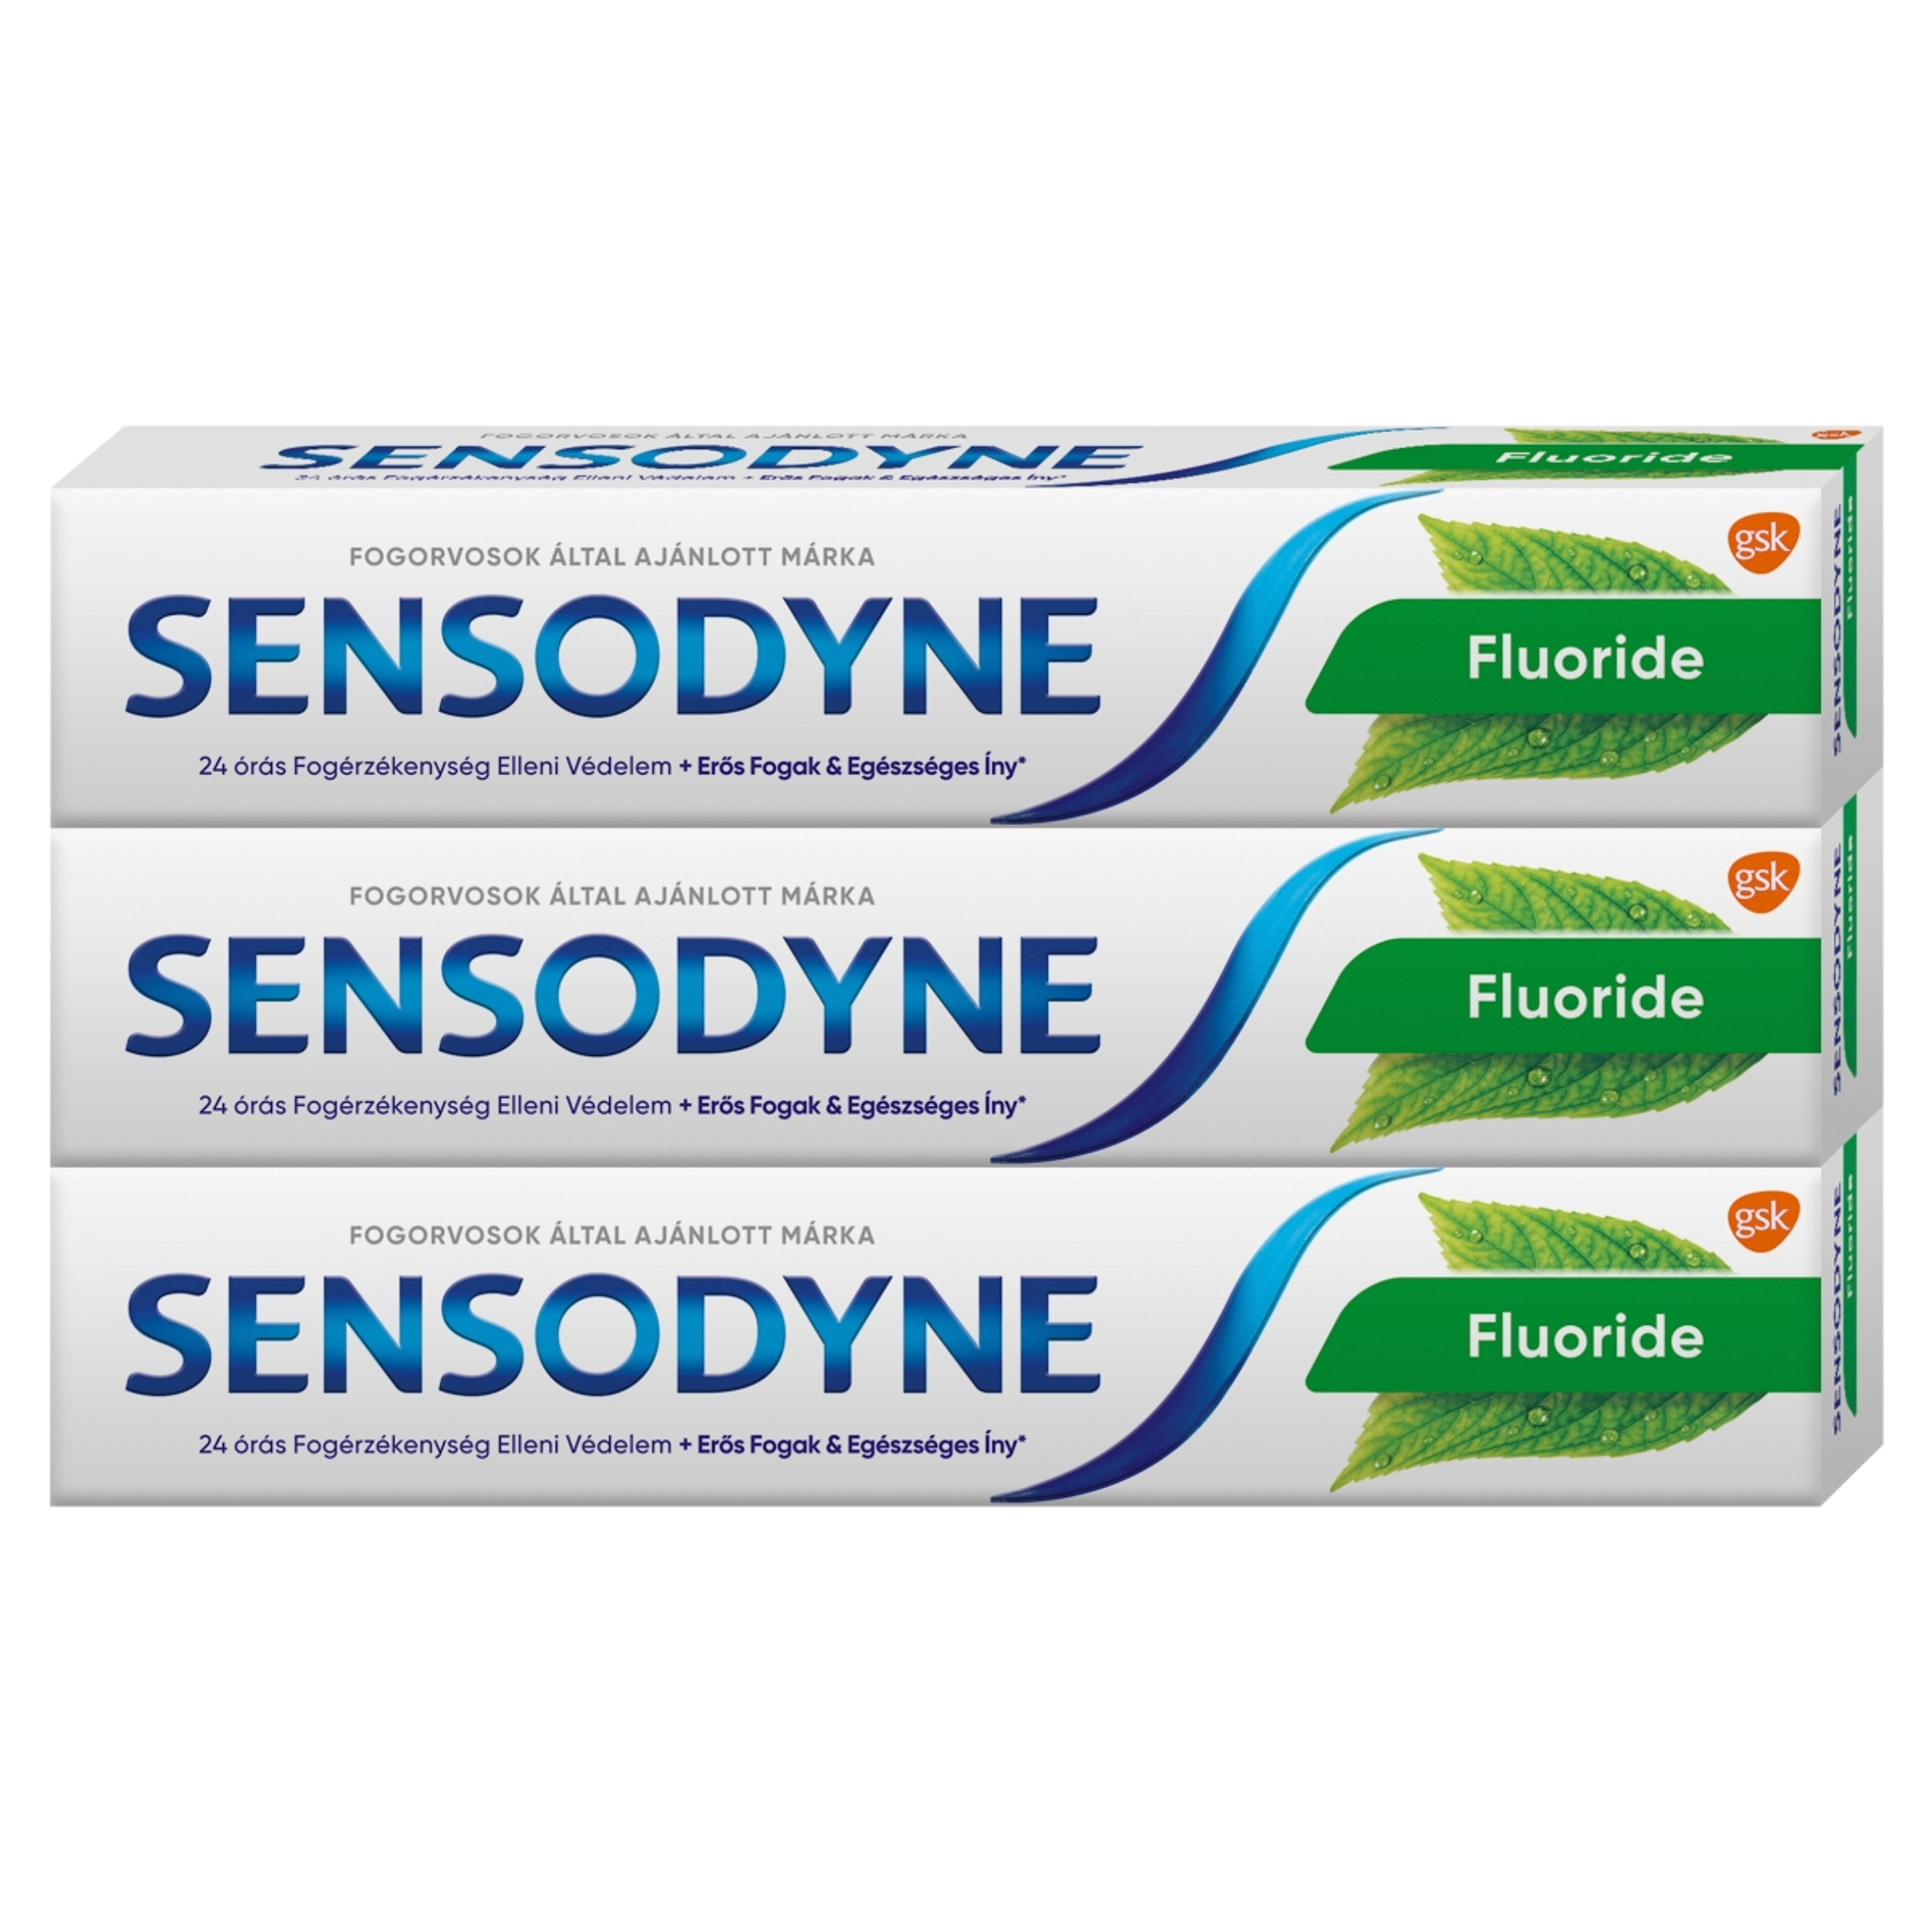 Sensodyne Fluorid fogkrém Trio pack, menta 3x75 ml - 225 ml